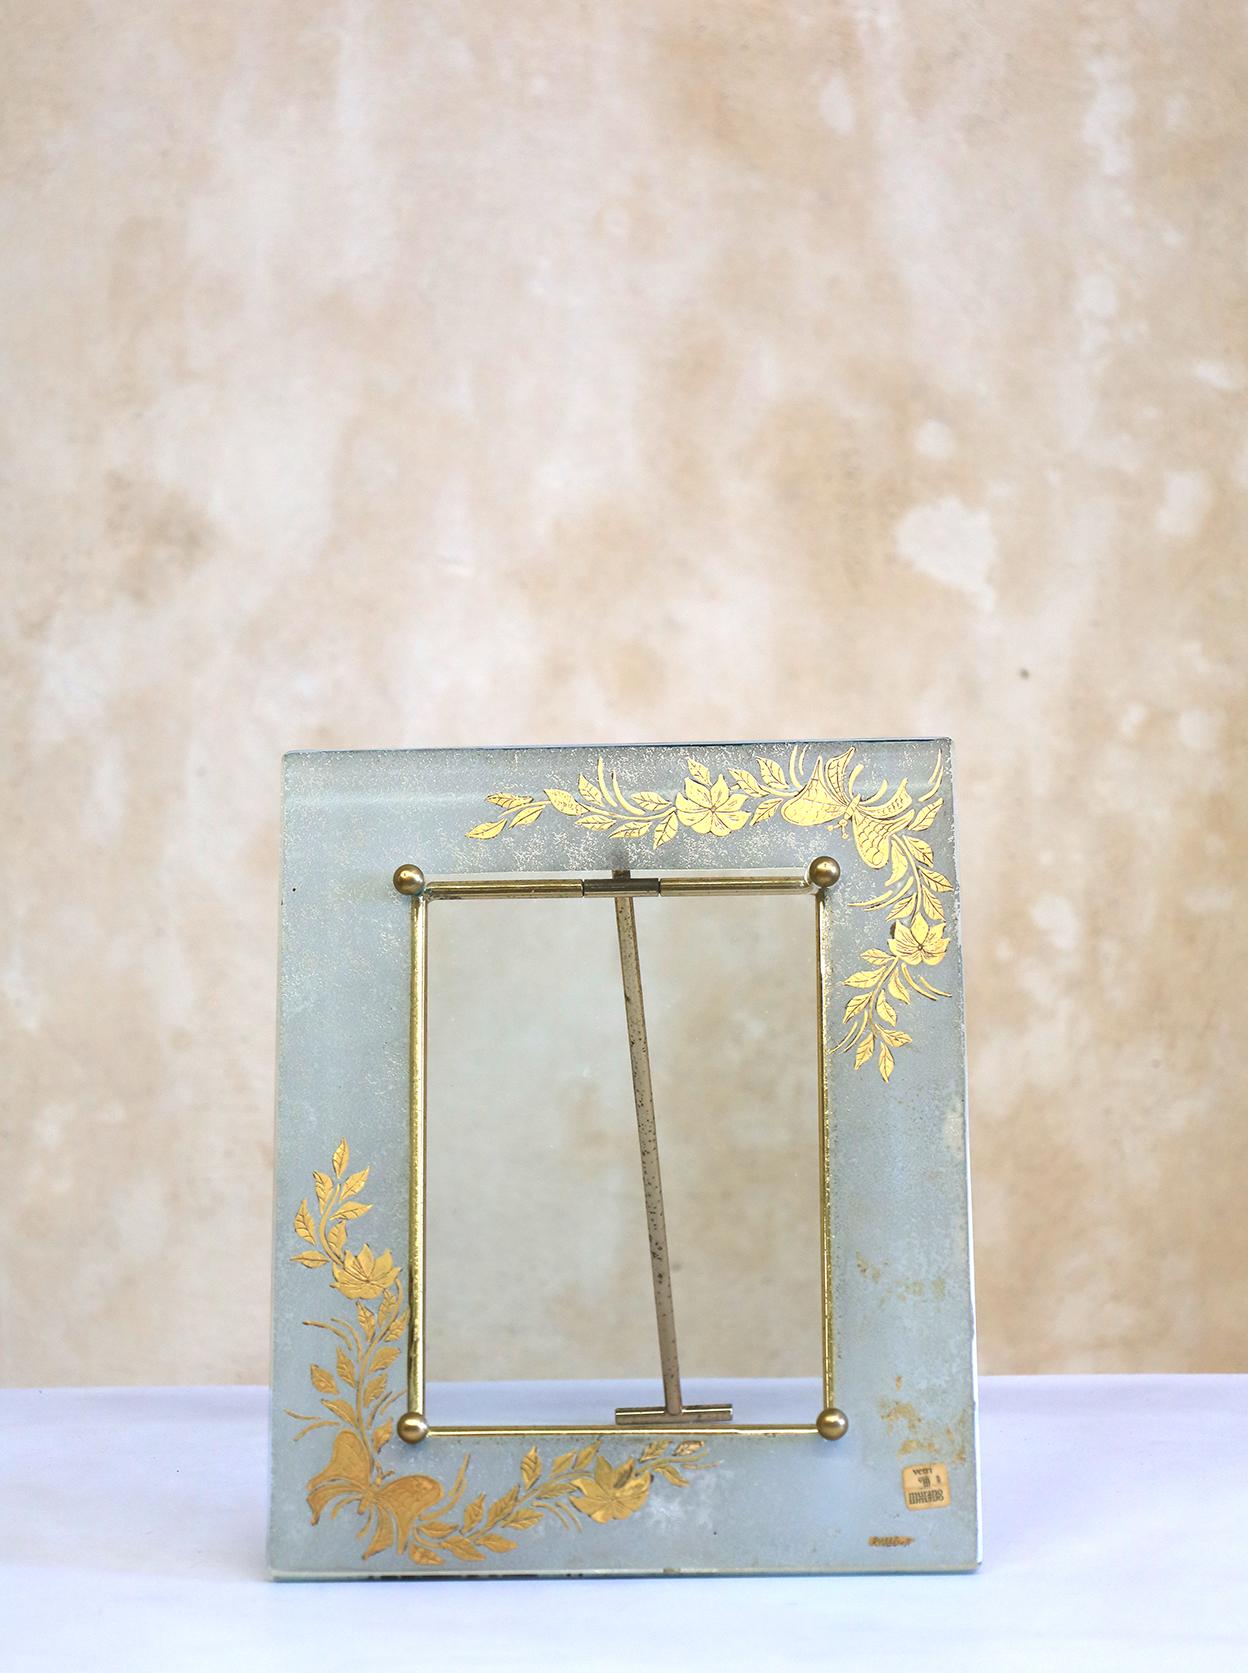 Sehr seltener Bilderrahmen aus Murano-Glas von Burbe. Alle original signiert mit Vetri-Stempel.
Die schönen warmen Farben lassen sich leicht mit allen Arten von Dekorationen kombinieren.